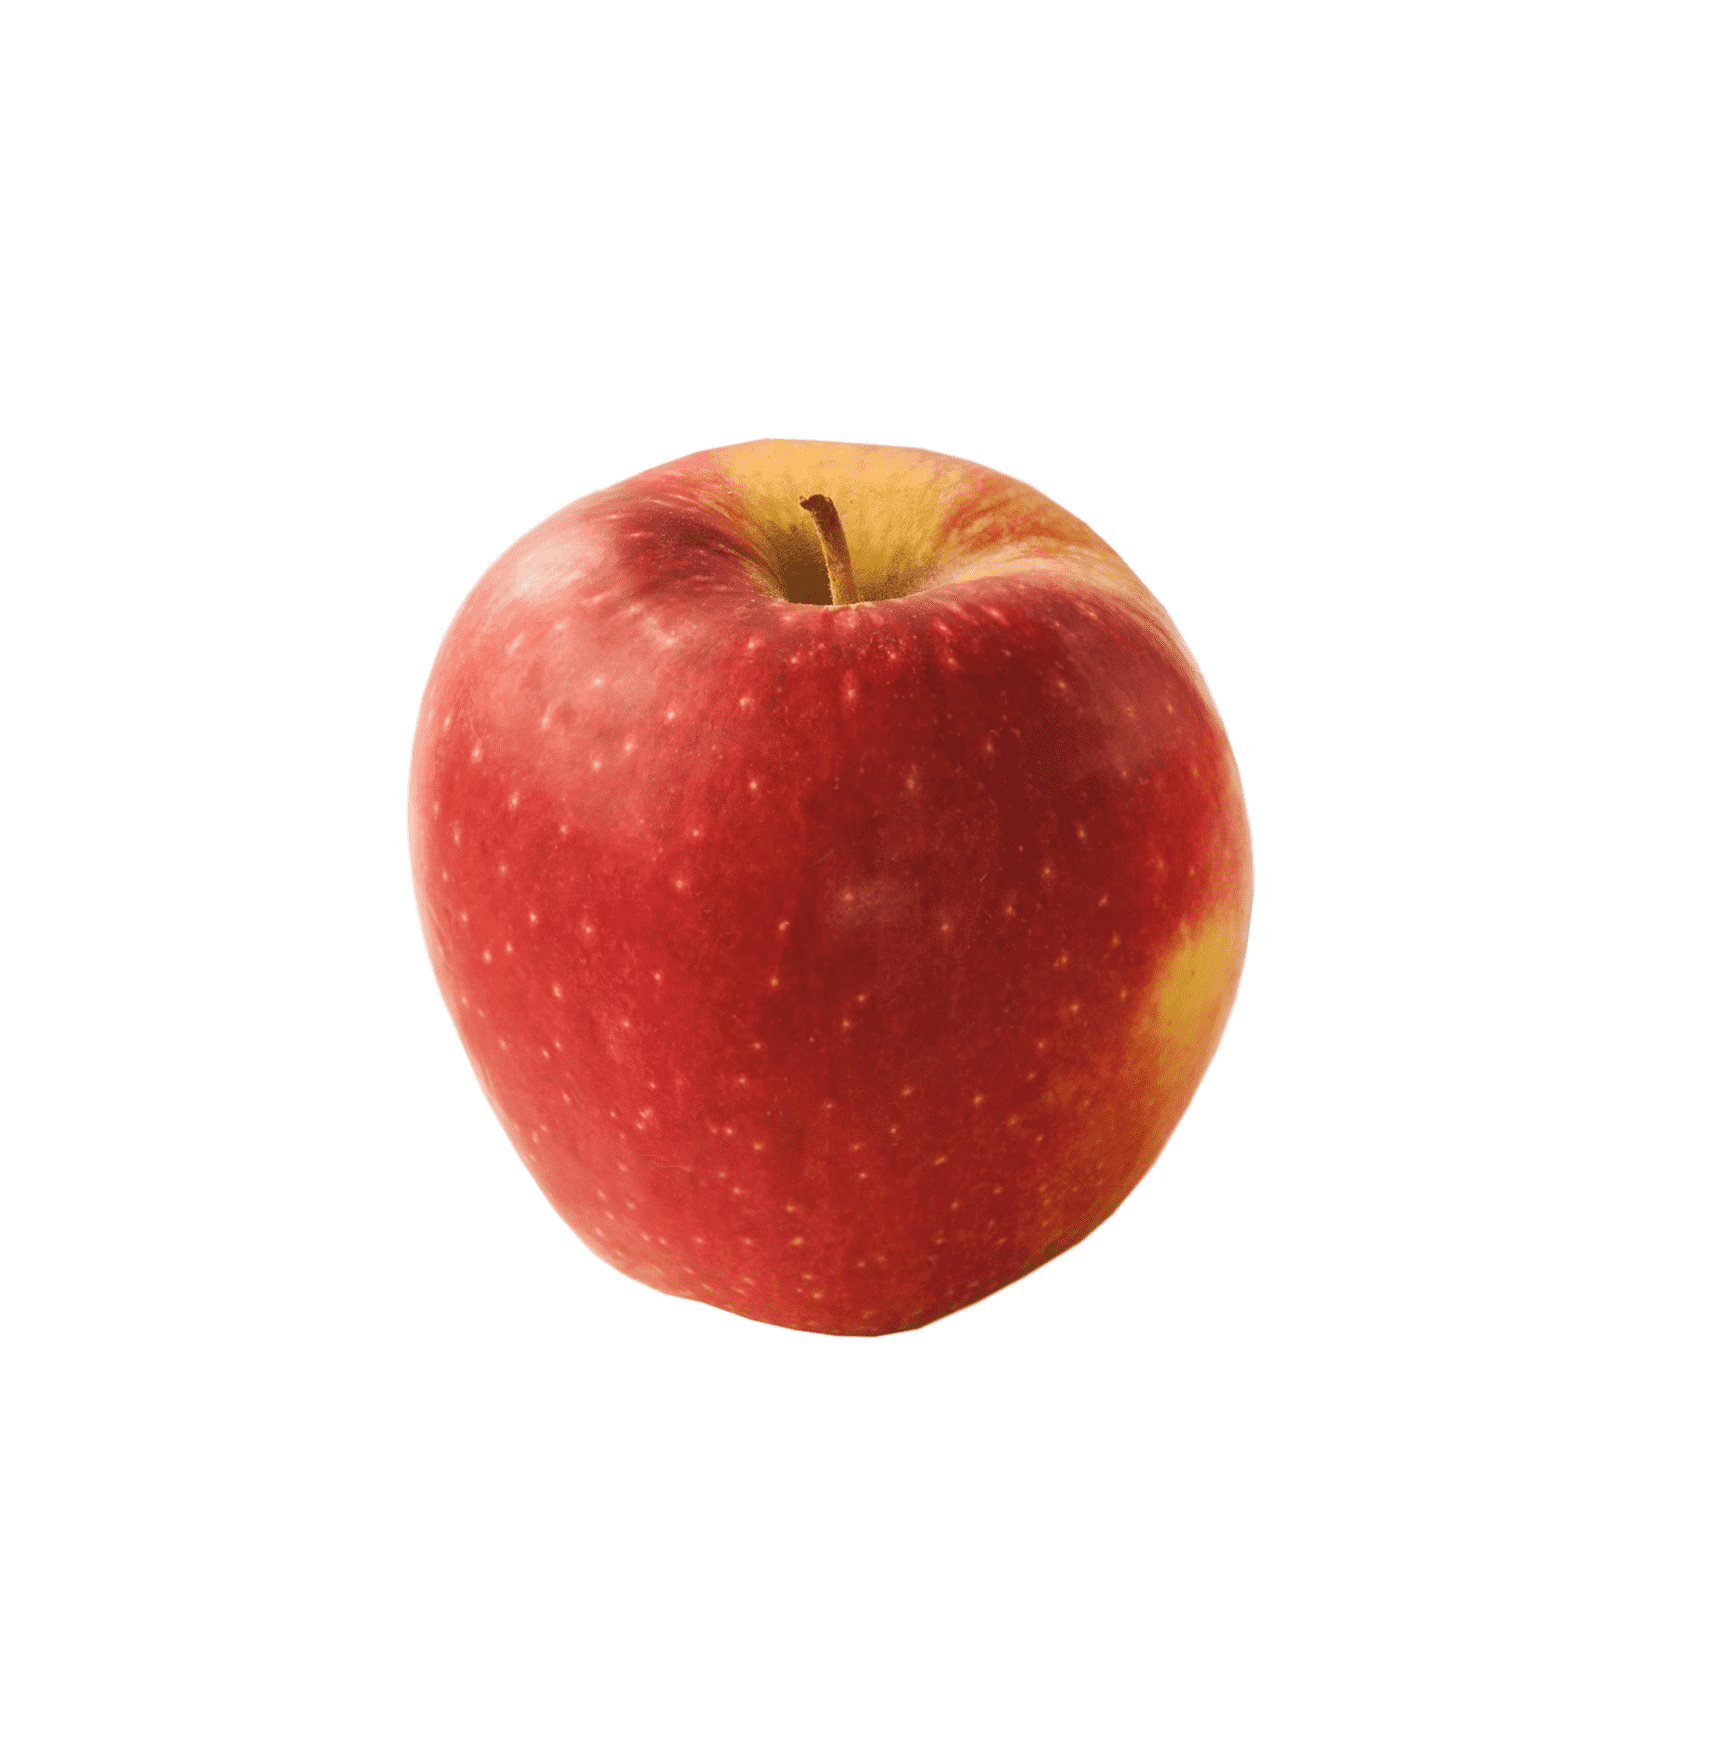 Äpple Red Prince ca160-170g/st, pris beräknad per styck